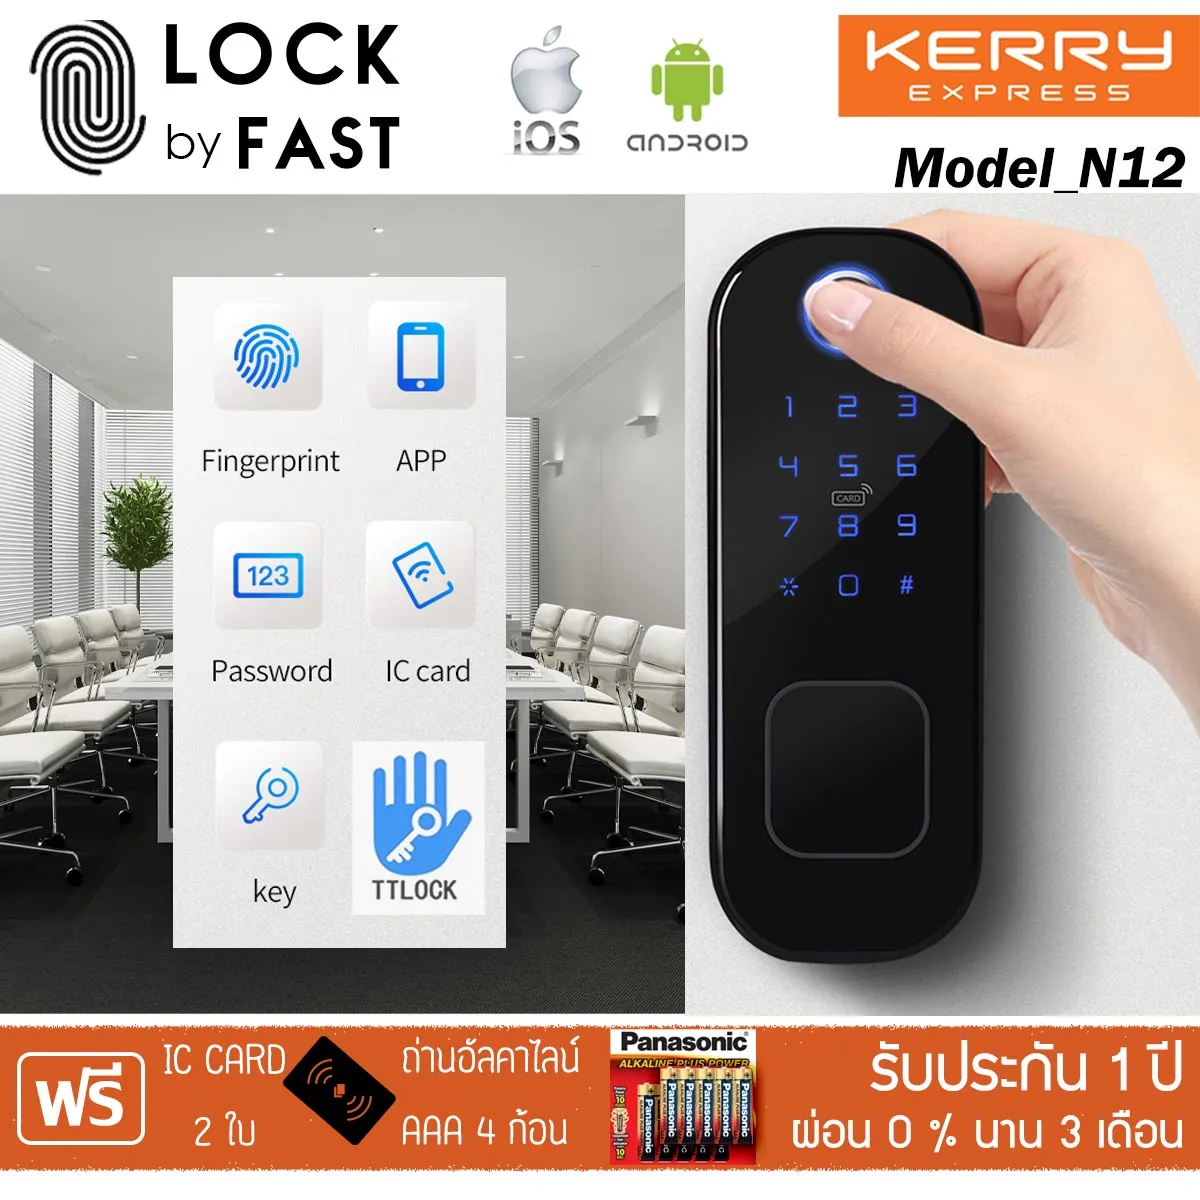 Digital Door Lock รุ่น N12 กลอนดิจิตอล 6 ระบบ ใส่ได้กับประตูทุกแบบ ใช้งานระบบ LIM LOCK สะดวก ทนทาน ปลอดภัย ติดตั้งเองได้ LOCK BY FAST